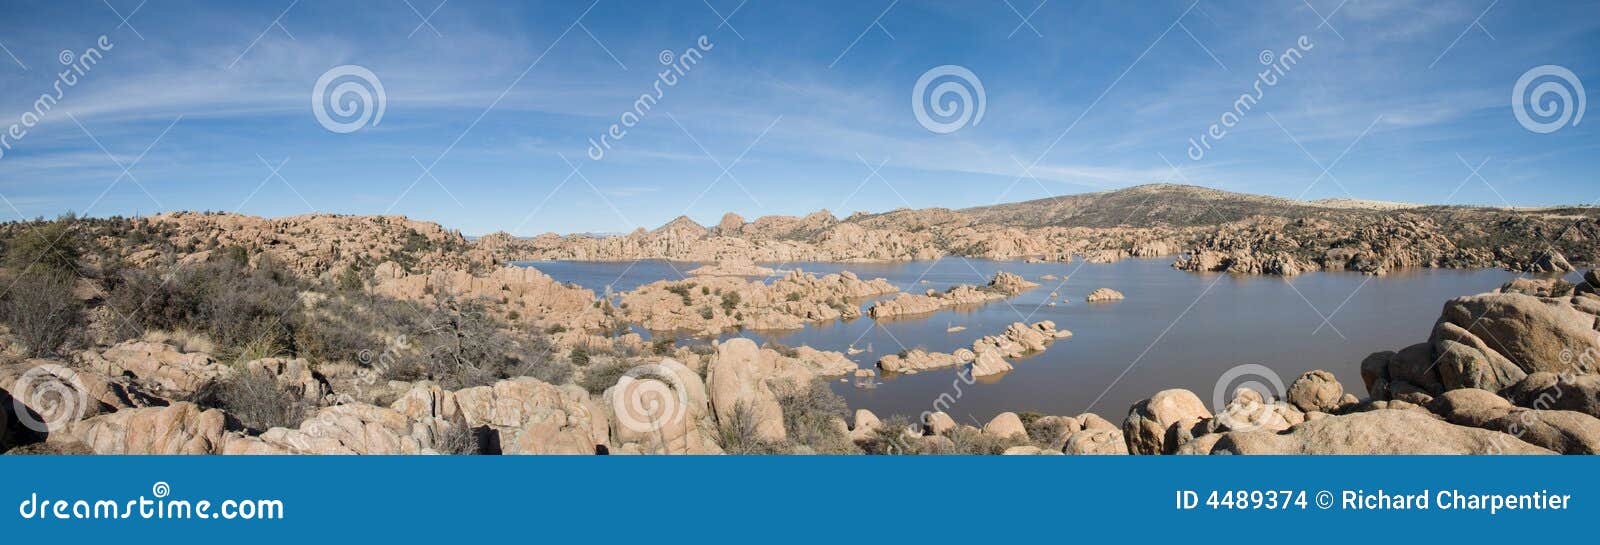 Photo panoramique prise au lac watson, un haut lac de désert en Arizona. Le lac est bagué dedans par une formation géologique connue sous le nom de vallons de granit.